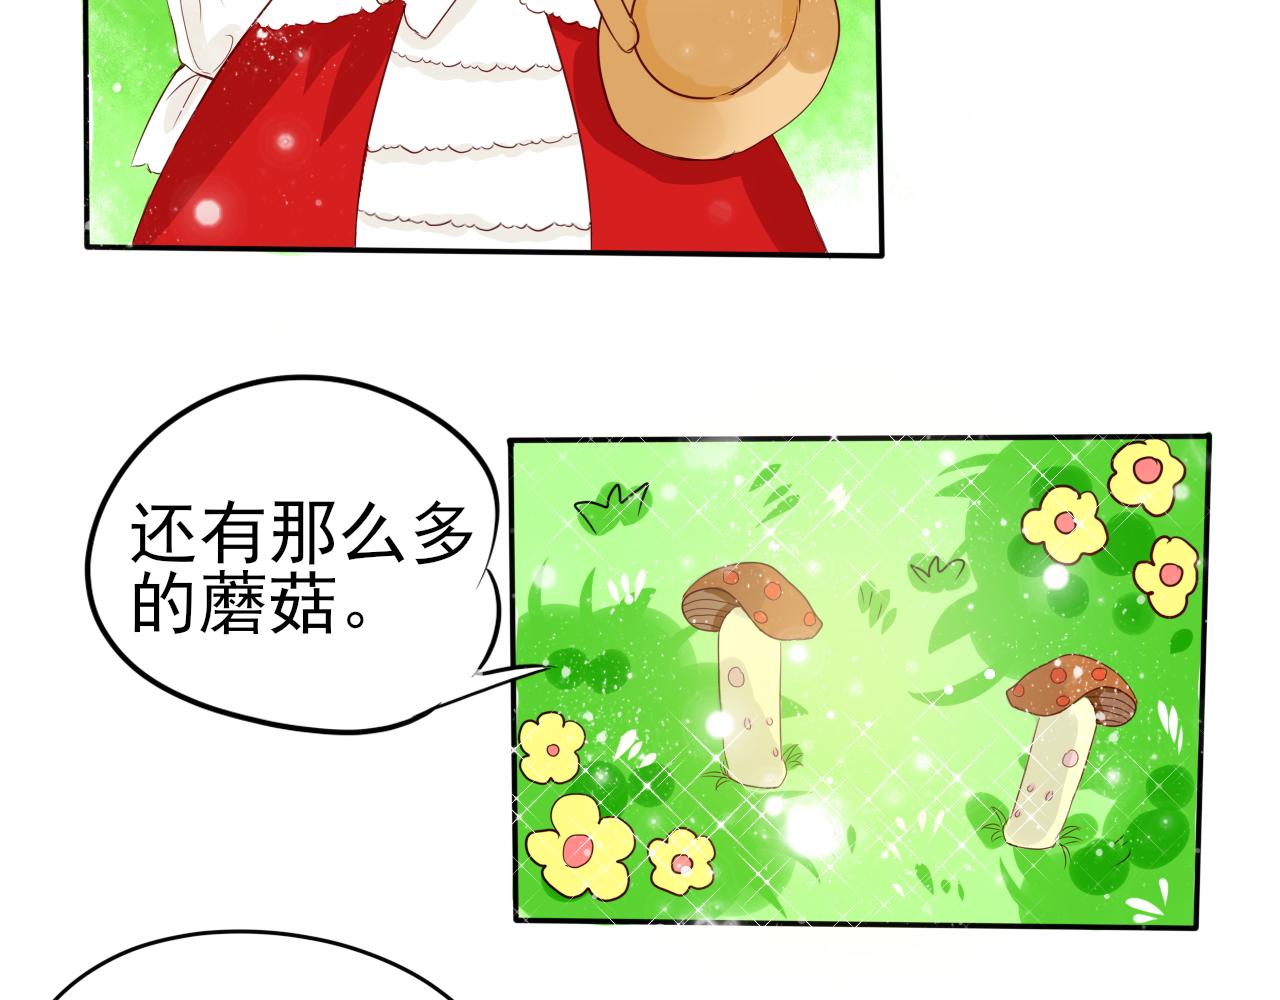 蕊蕊童話集 - 採蘑菇的小姑娘1 - 1